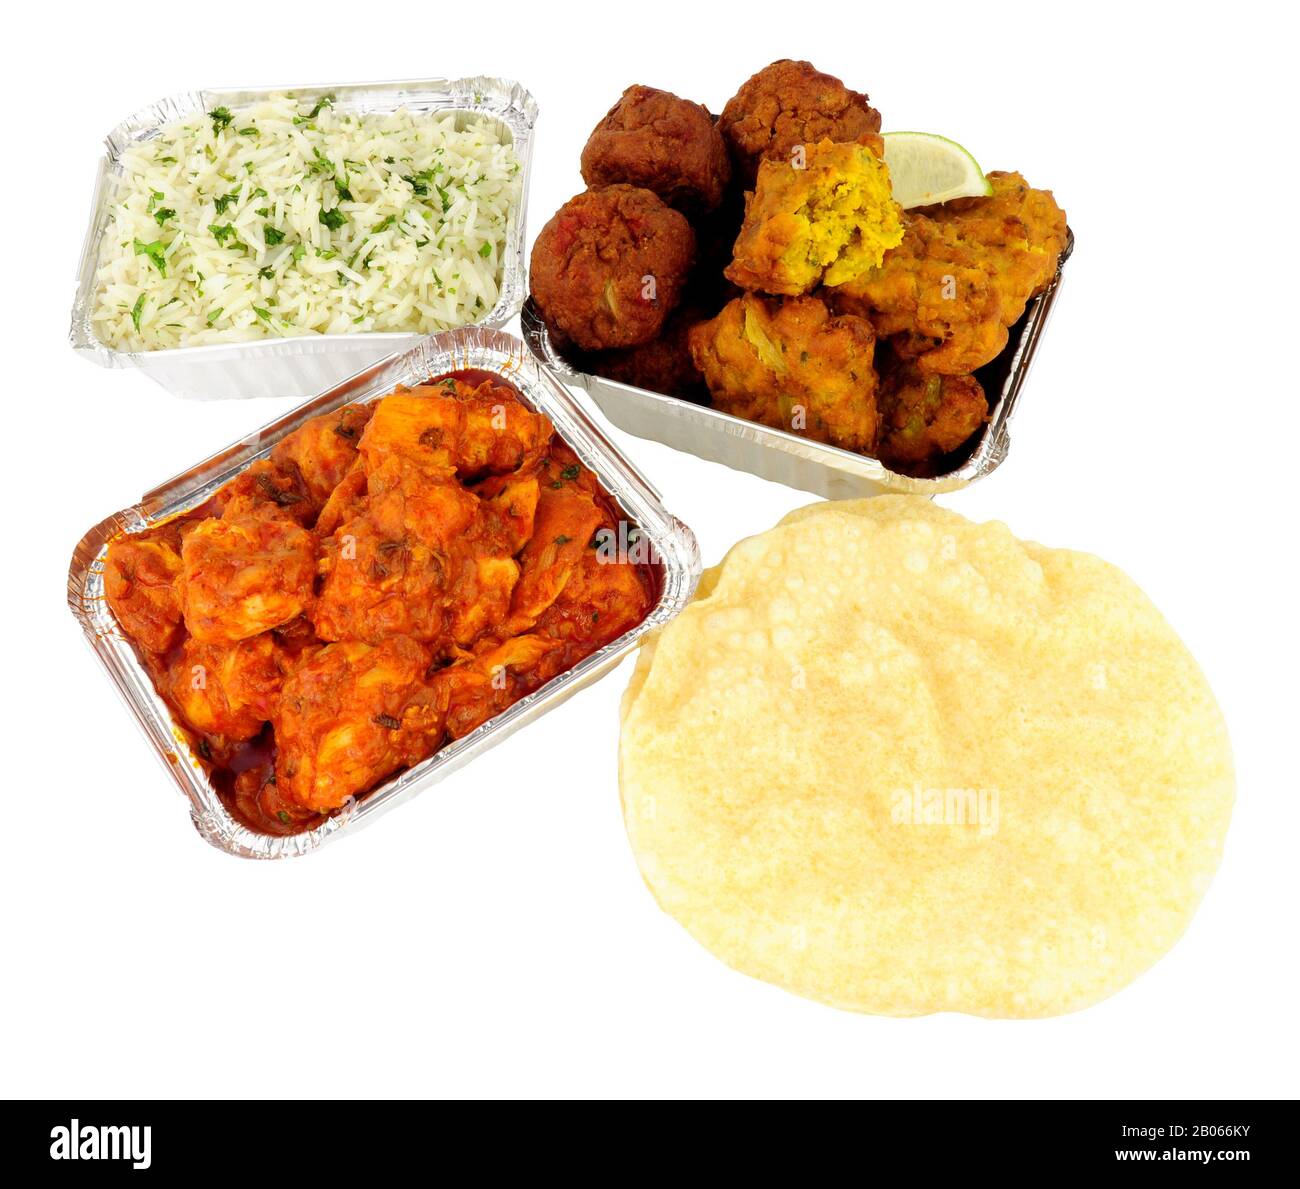 Hühnercurry nehmen Mahlzeit mit Reis und Poppadoms in Folienbehältern auf weißem Grund ab Stockfoto